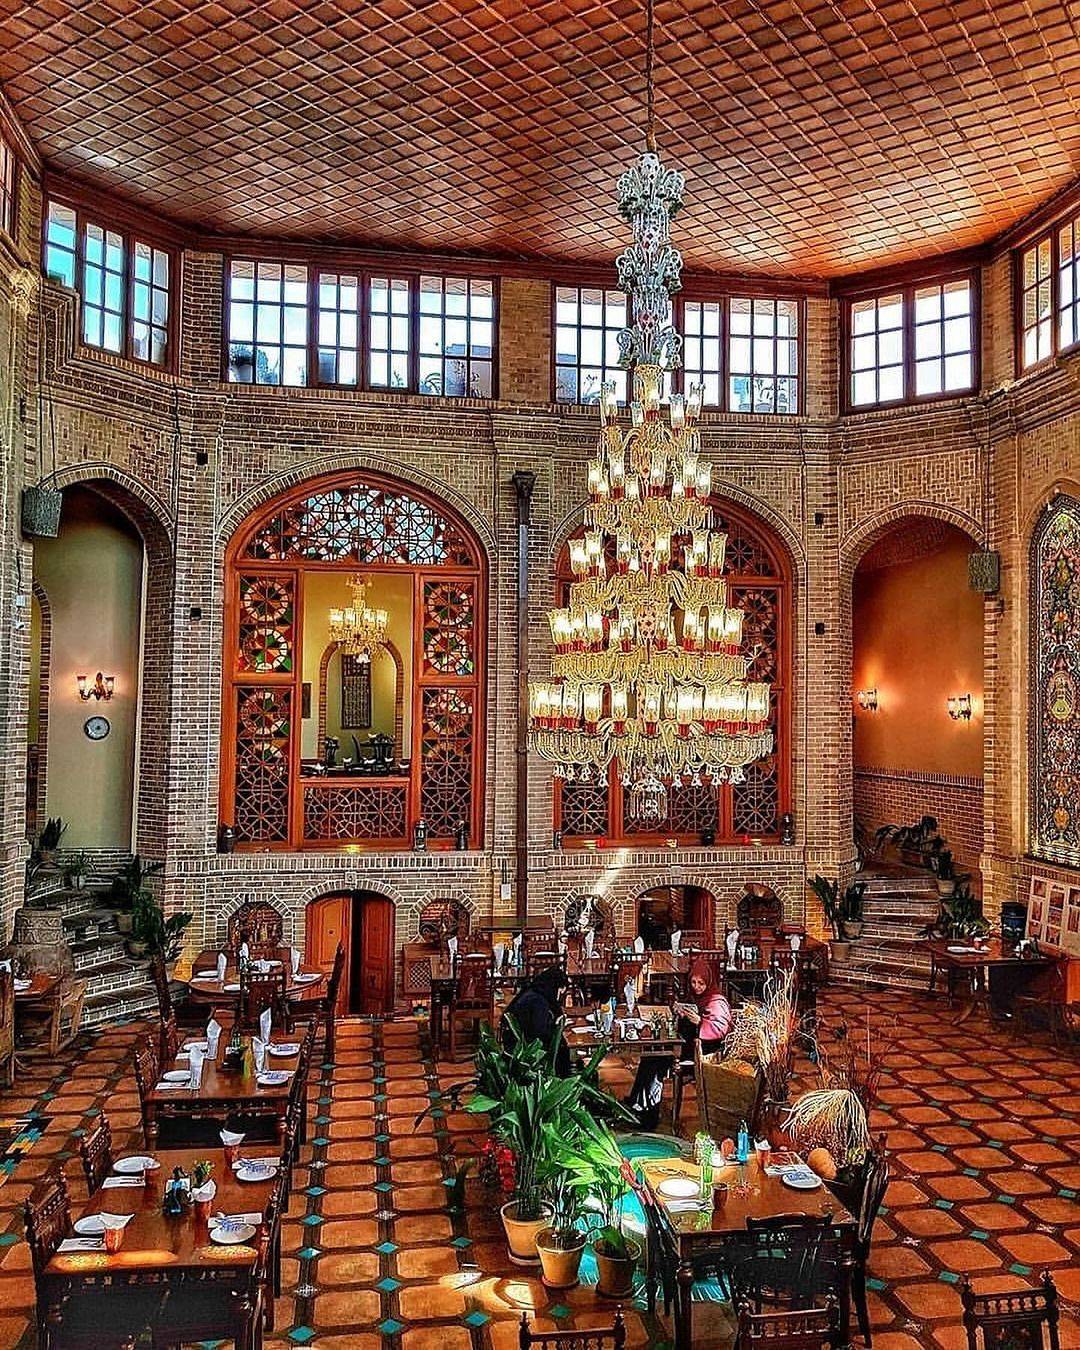 یکی از زیباترین رستوران های تهران هستش رستوران .ار.توسط میرزا محمد باقر میزانی ساخته شده است. به دلیل آن که سازنده این | • درناتریپ ✈️